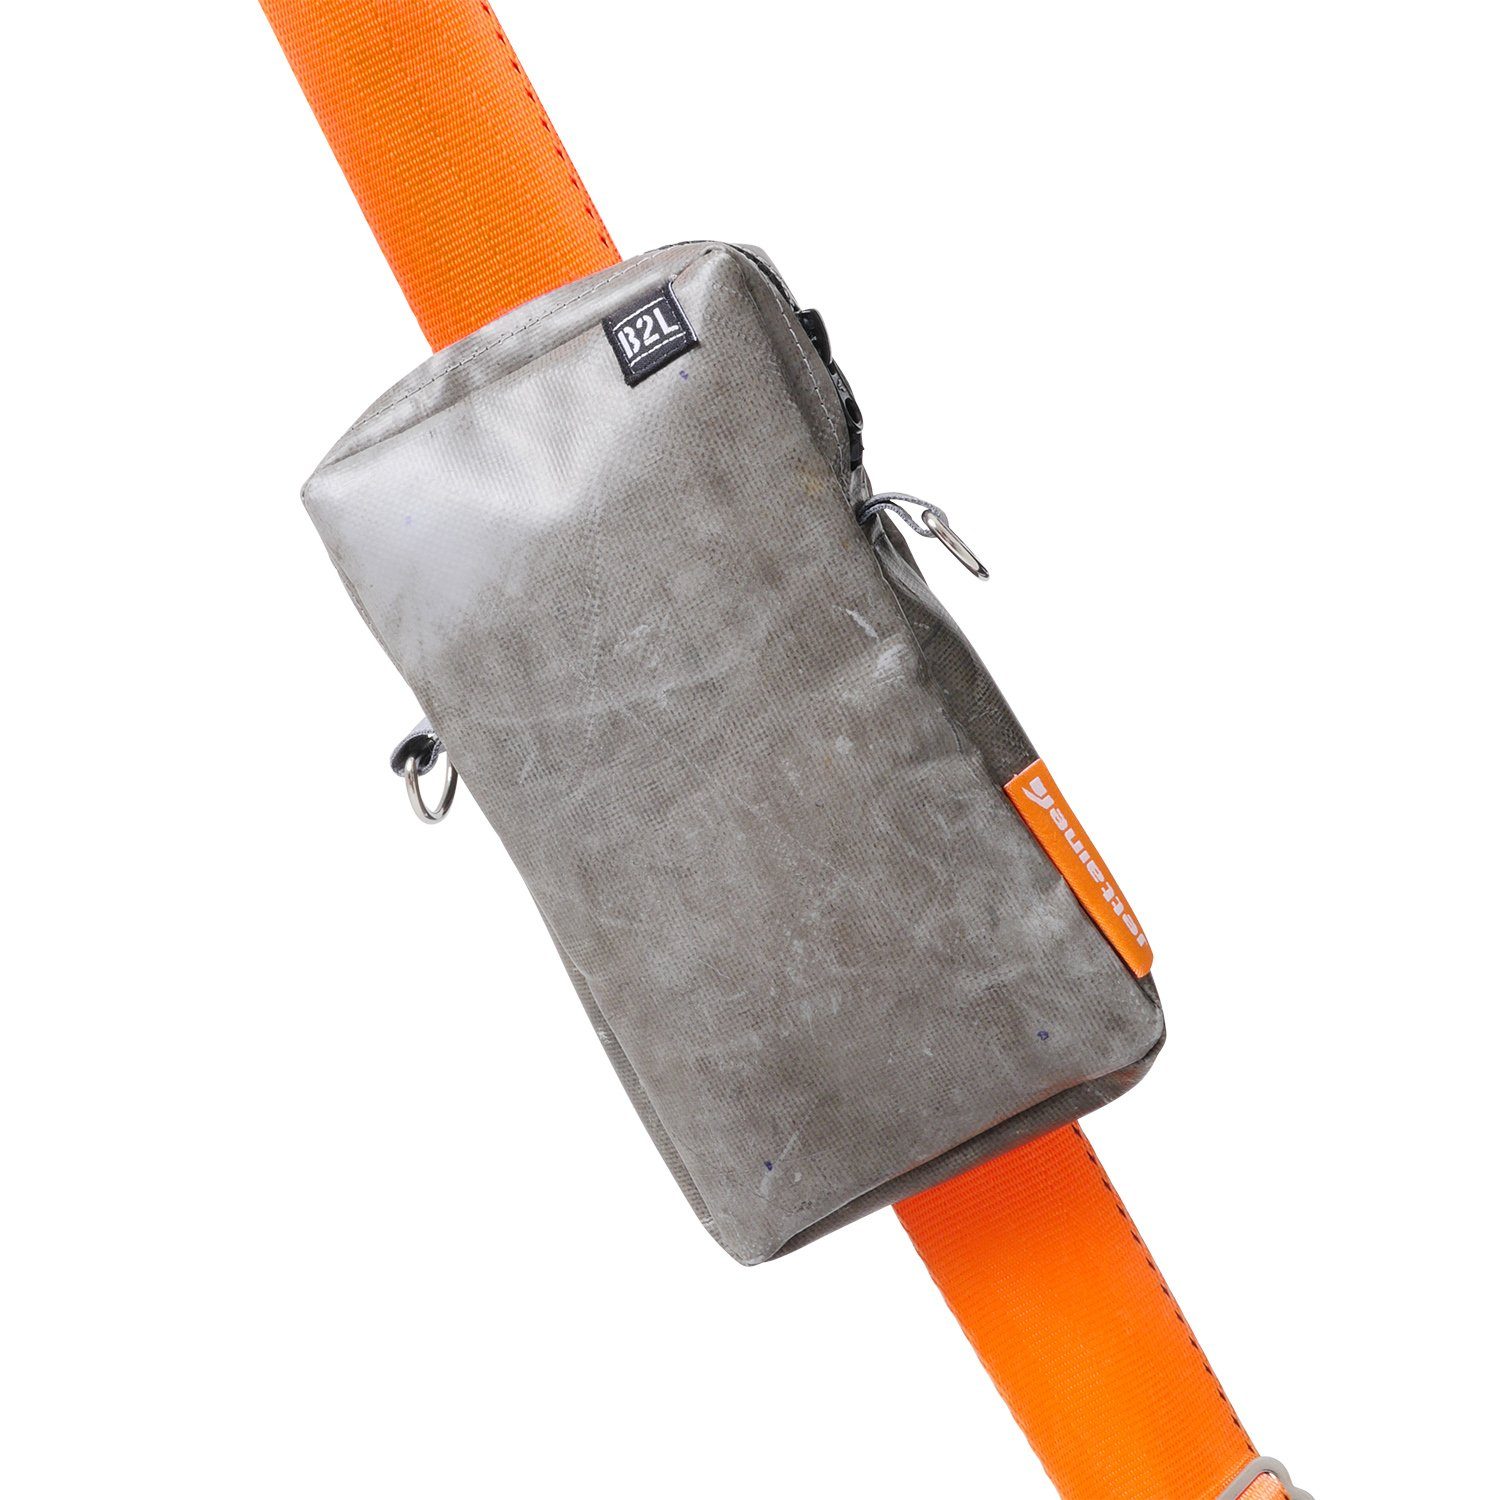 Bag to Life ULD praktischen im Bag, Crossover Umhängetasche Jettainer Design